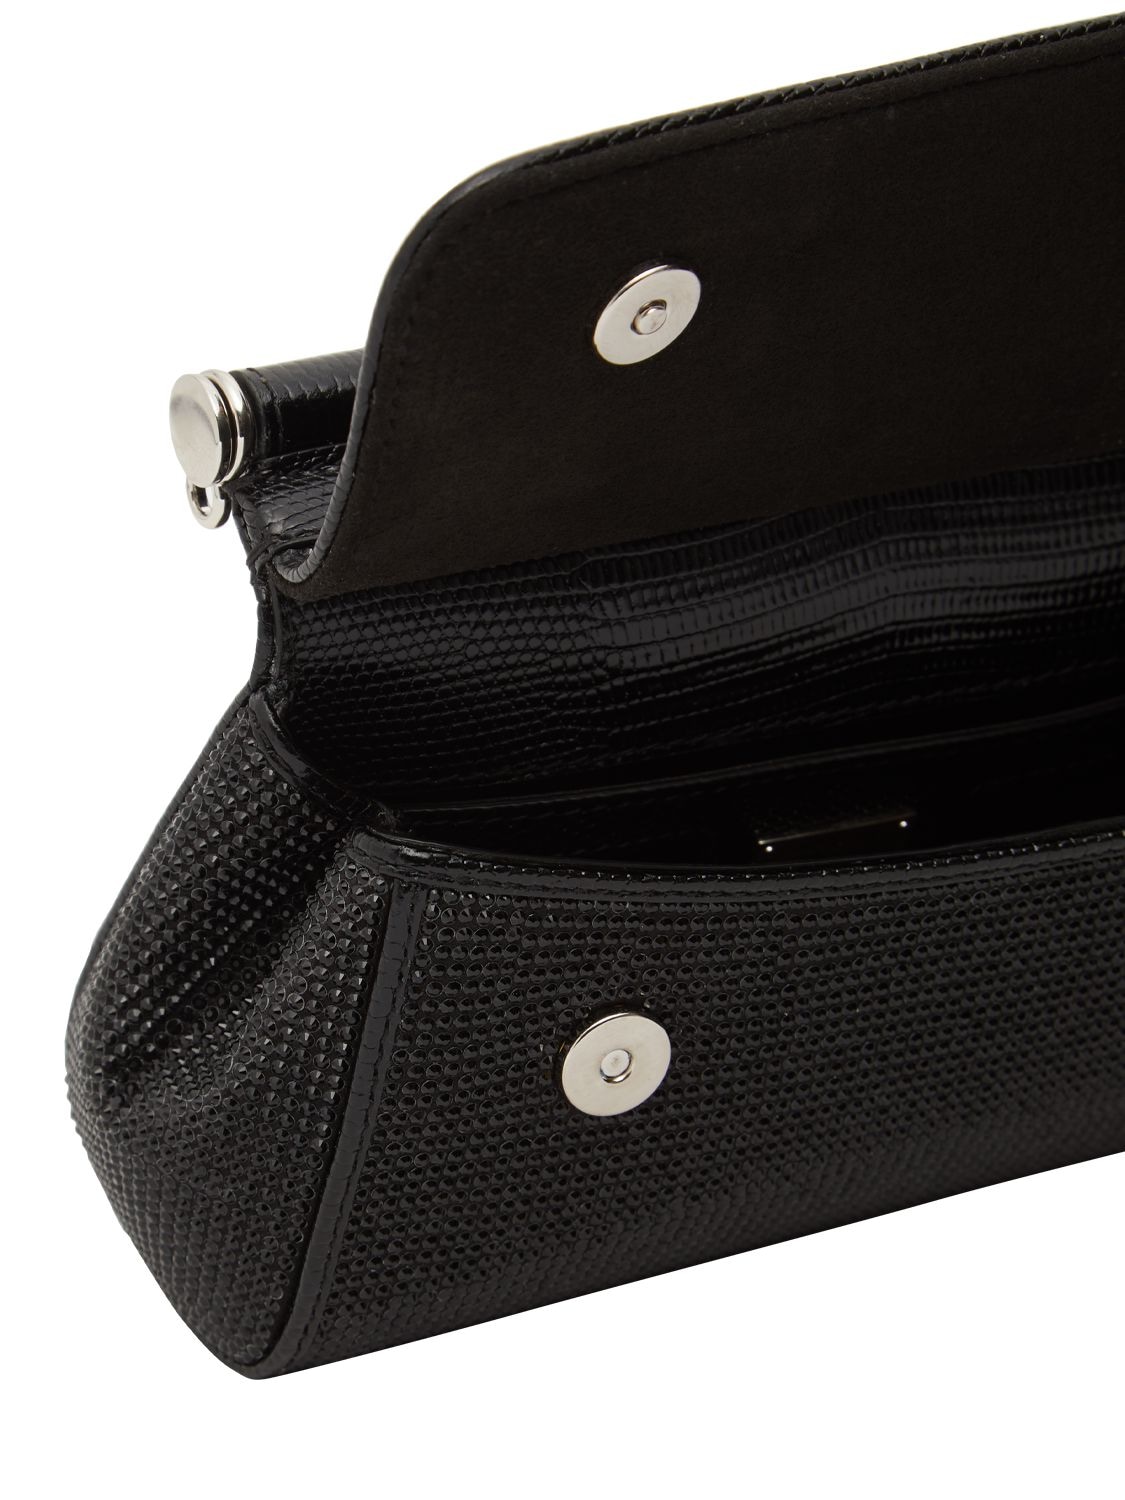 Elongated Sicily handbag in Black